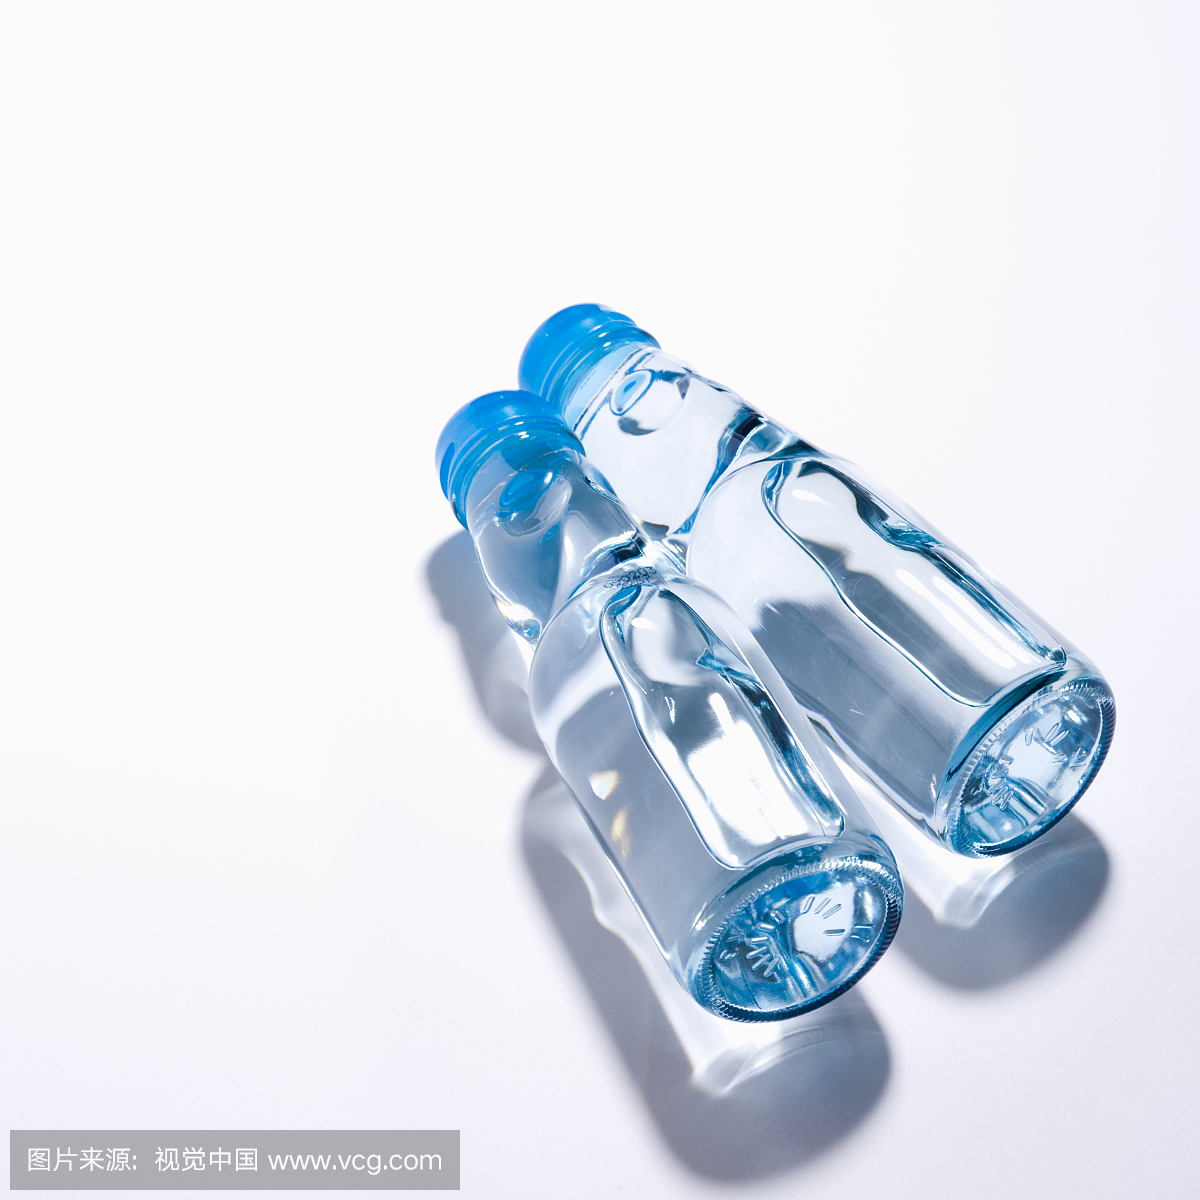 两个透明瓶与液体在白色背景上